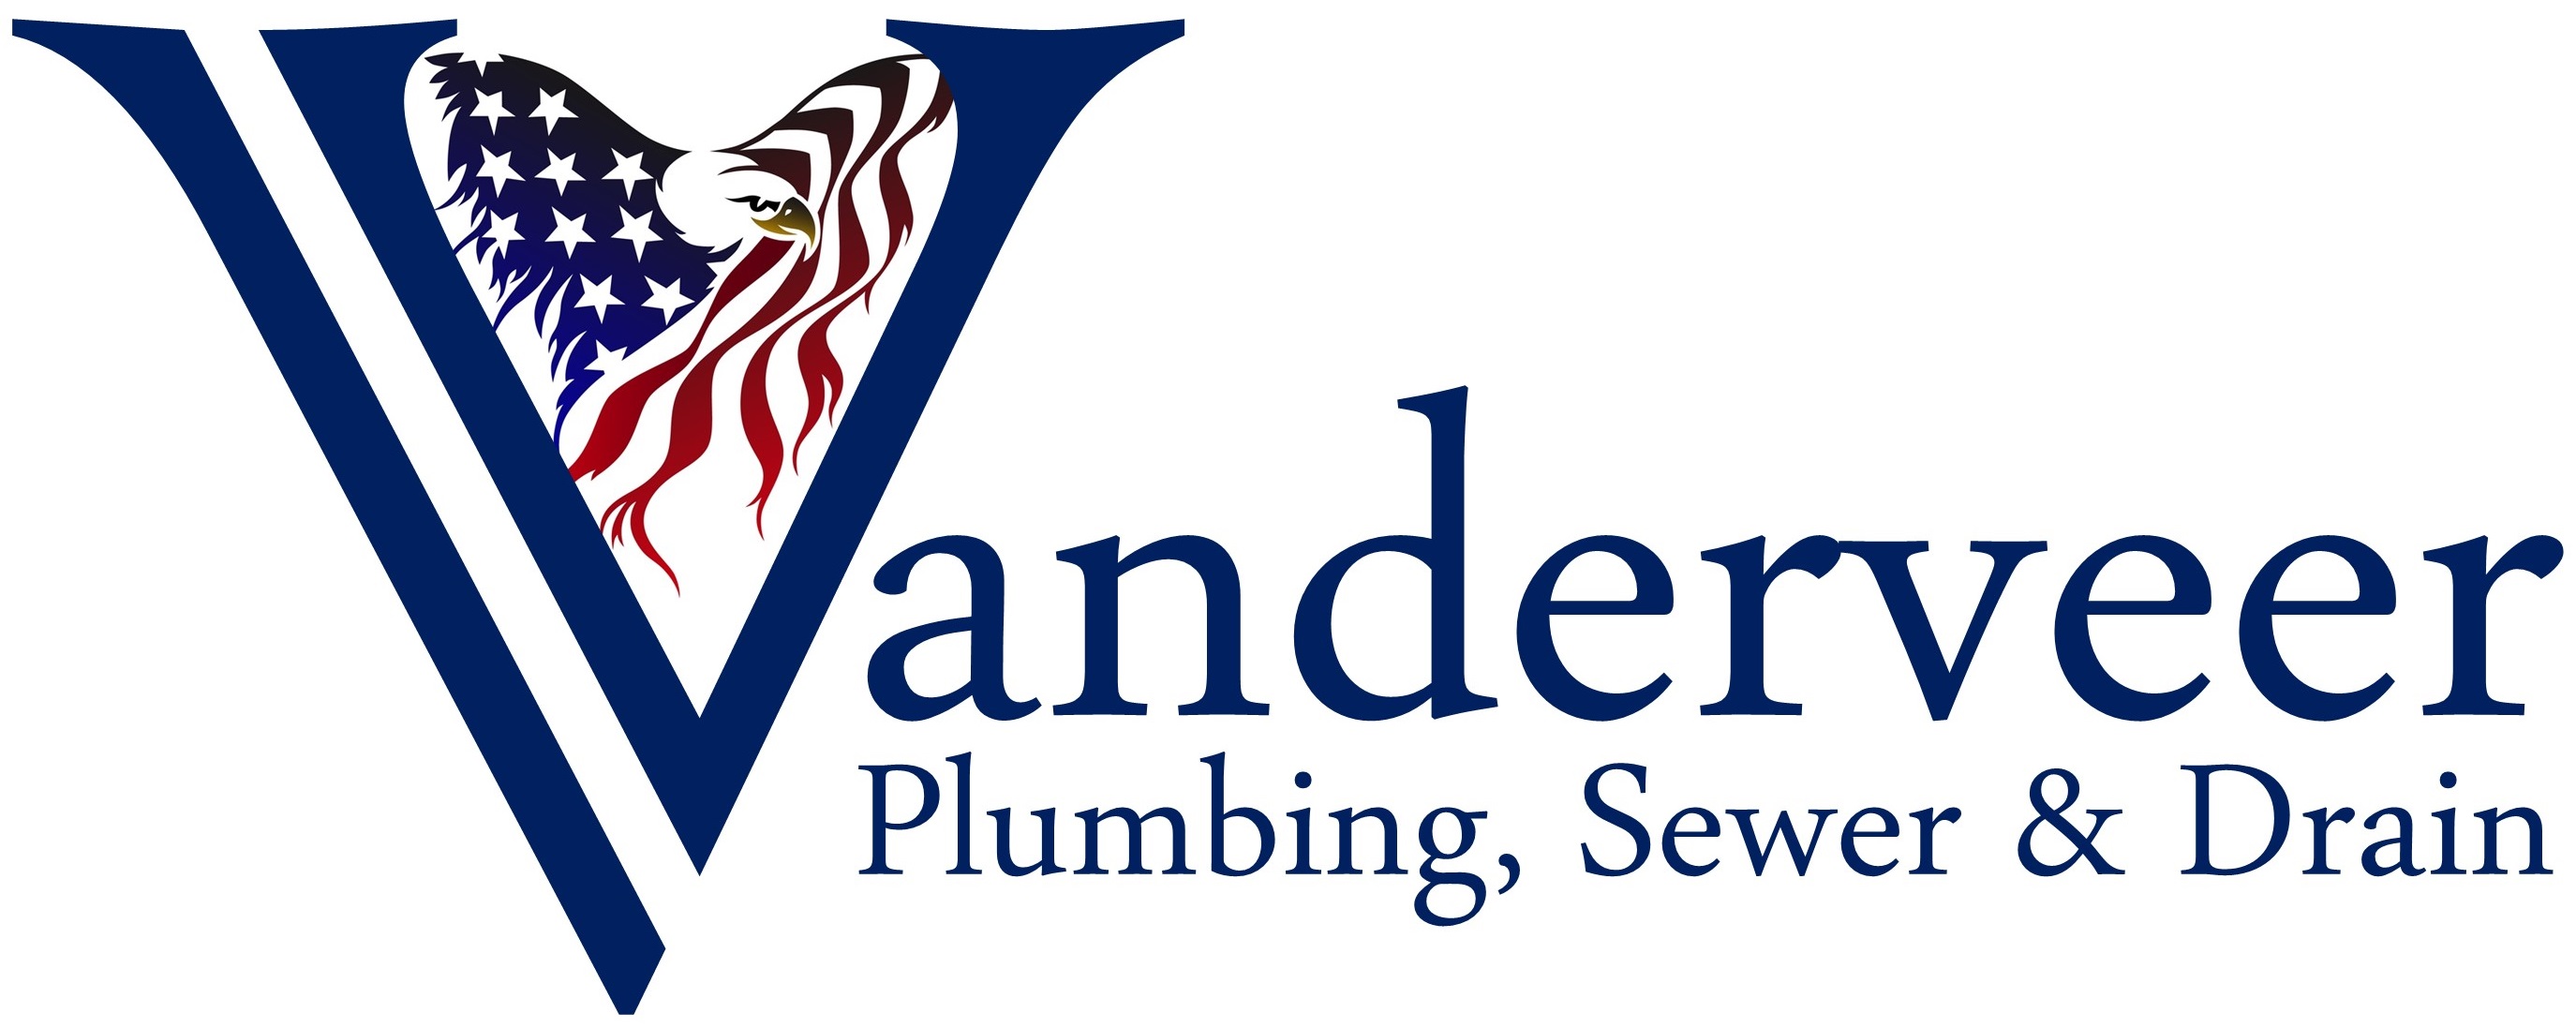 Vanderveer Plumbing, Sewer & Drain Logo